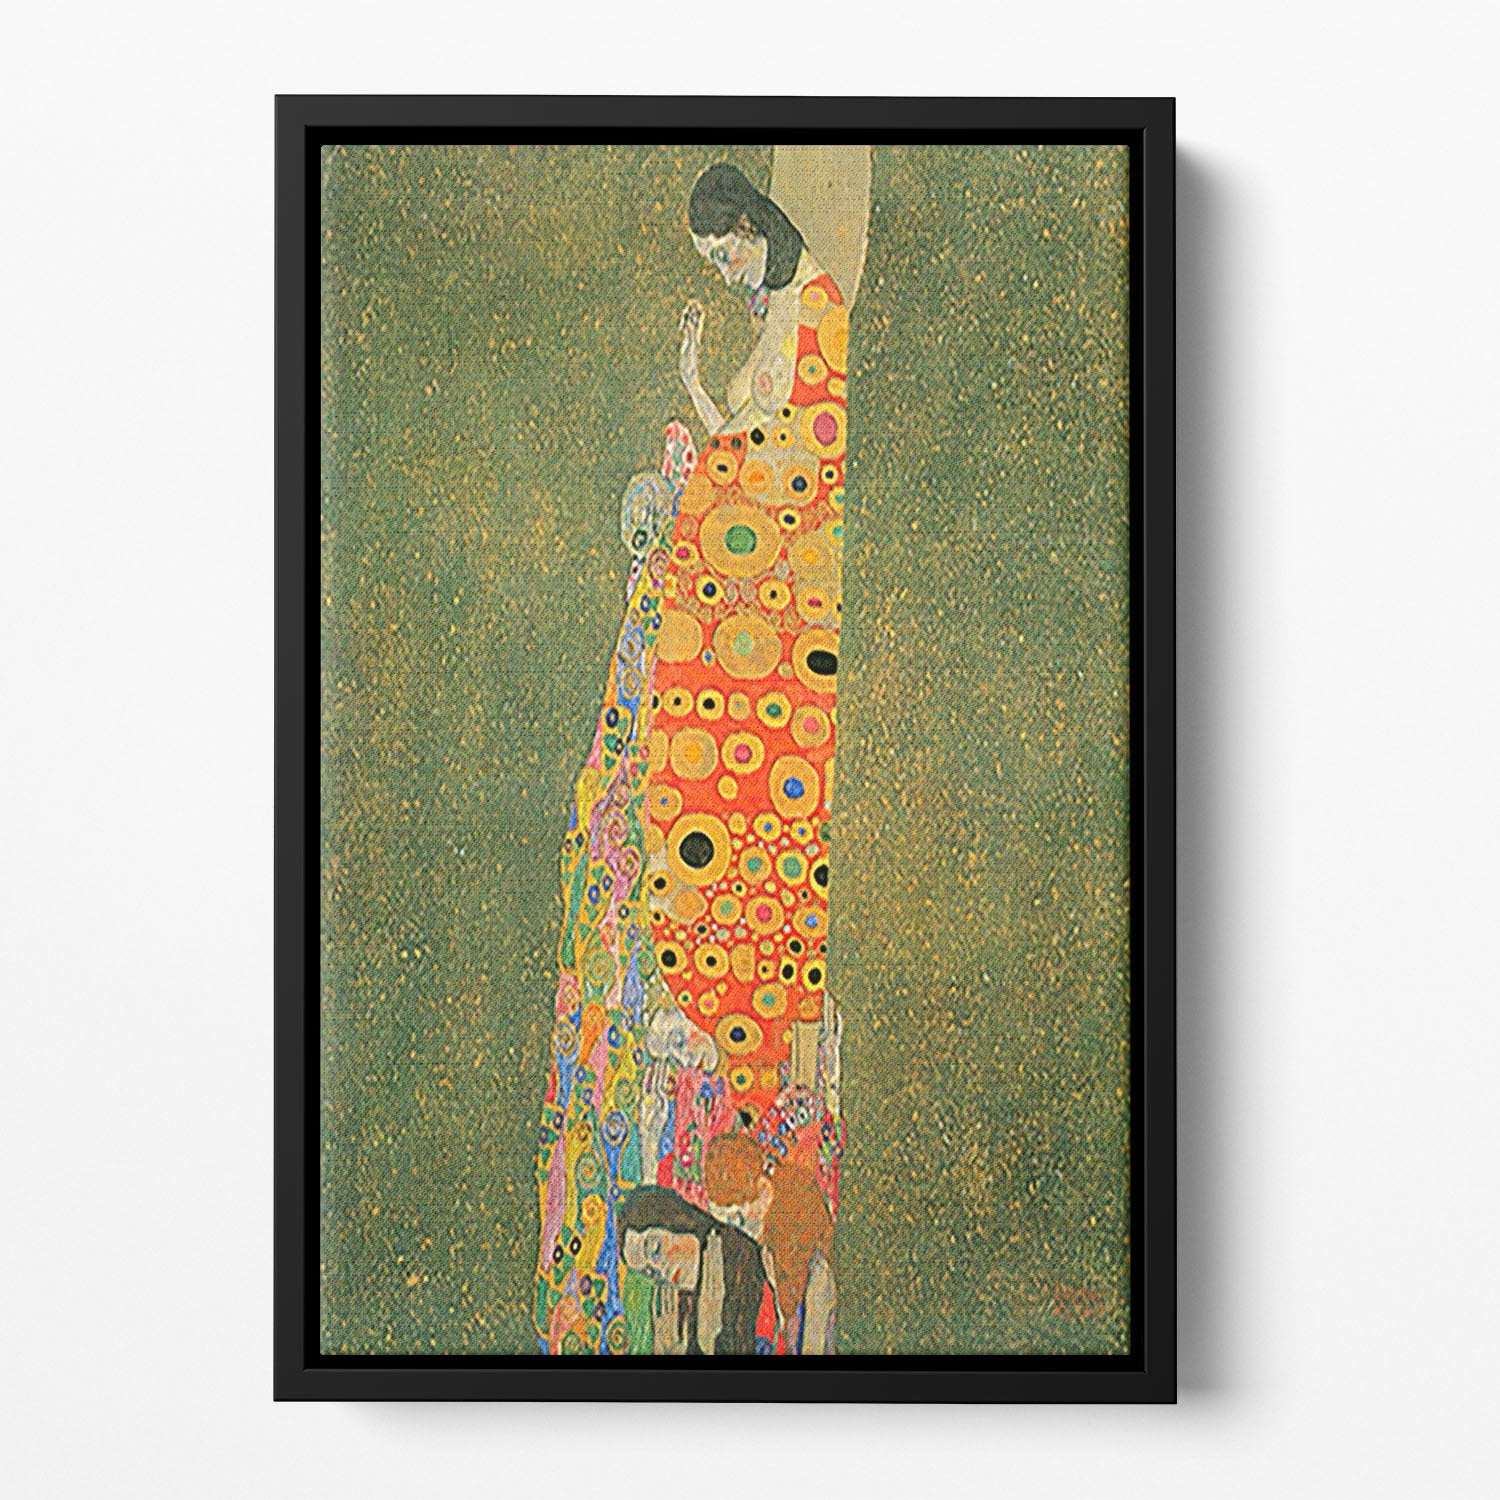 Abandoned Hope by Klimt Floating Framed Canvas